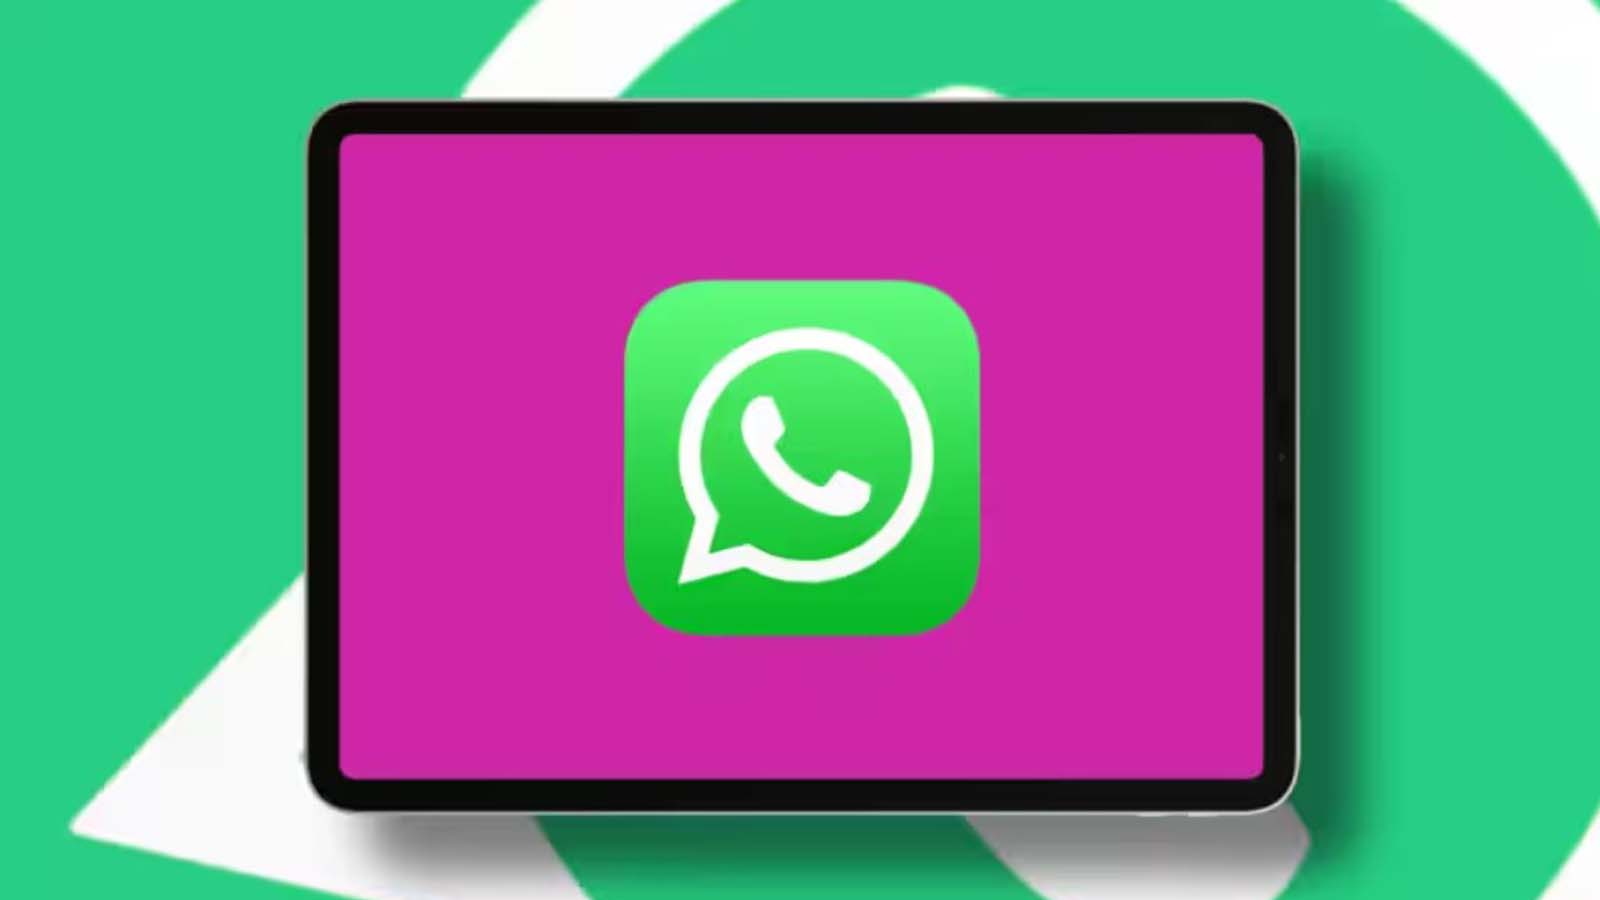 La verità dietro la "nuova spunta" di WhatsApp, forse meno entusiasmante di quanto ci si aspettasse